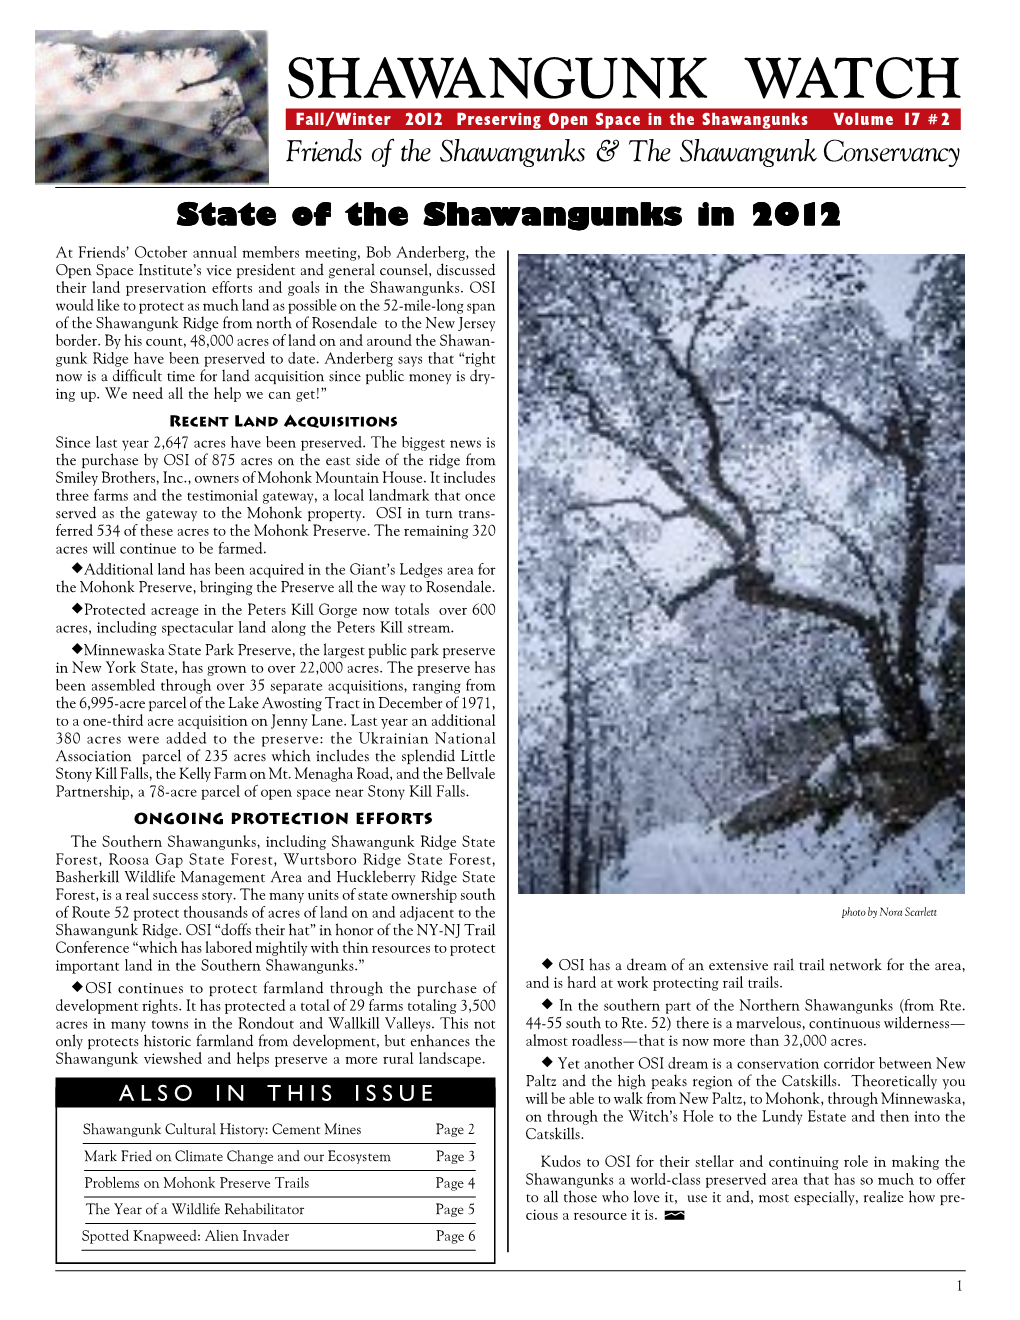 Shawangunk Watch Fall / Winter 2012